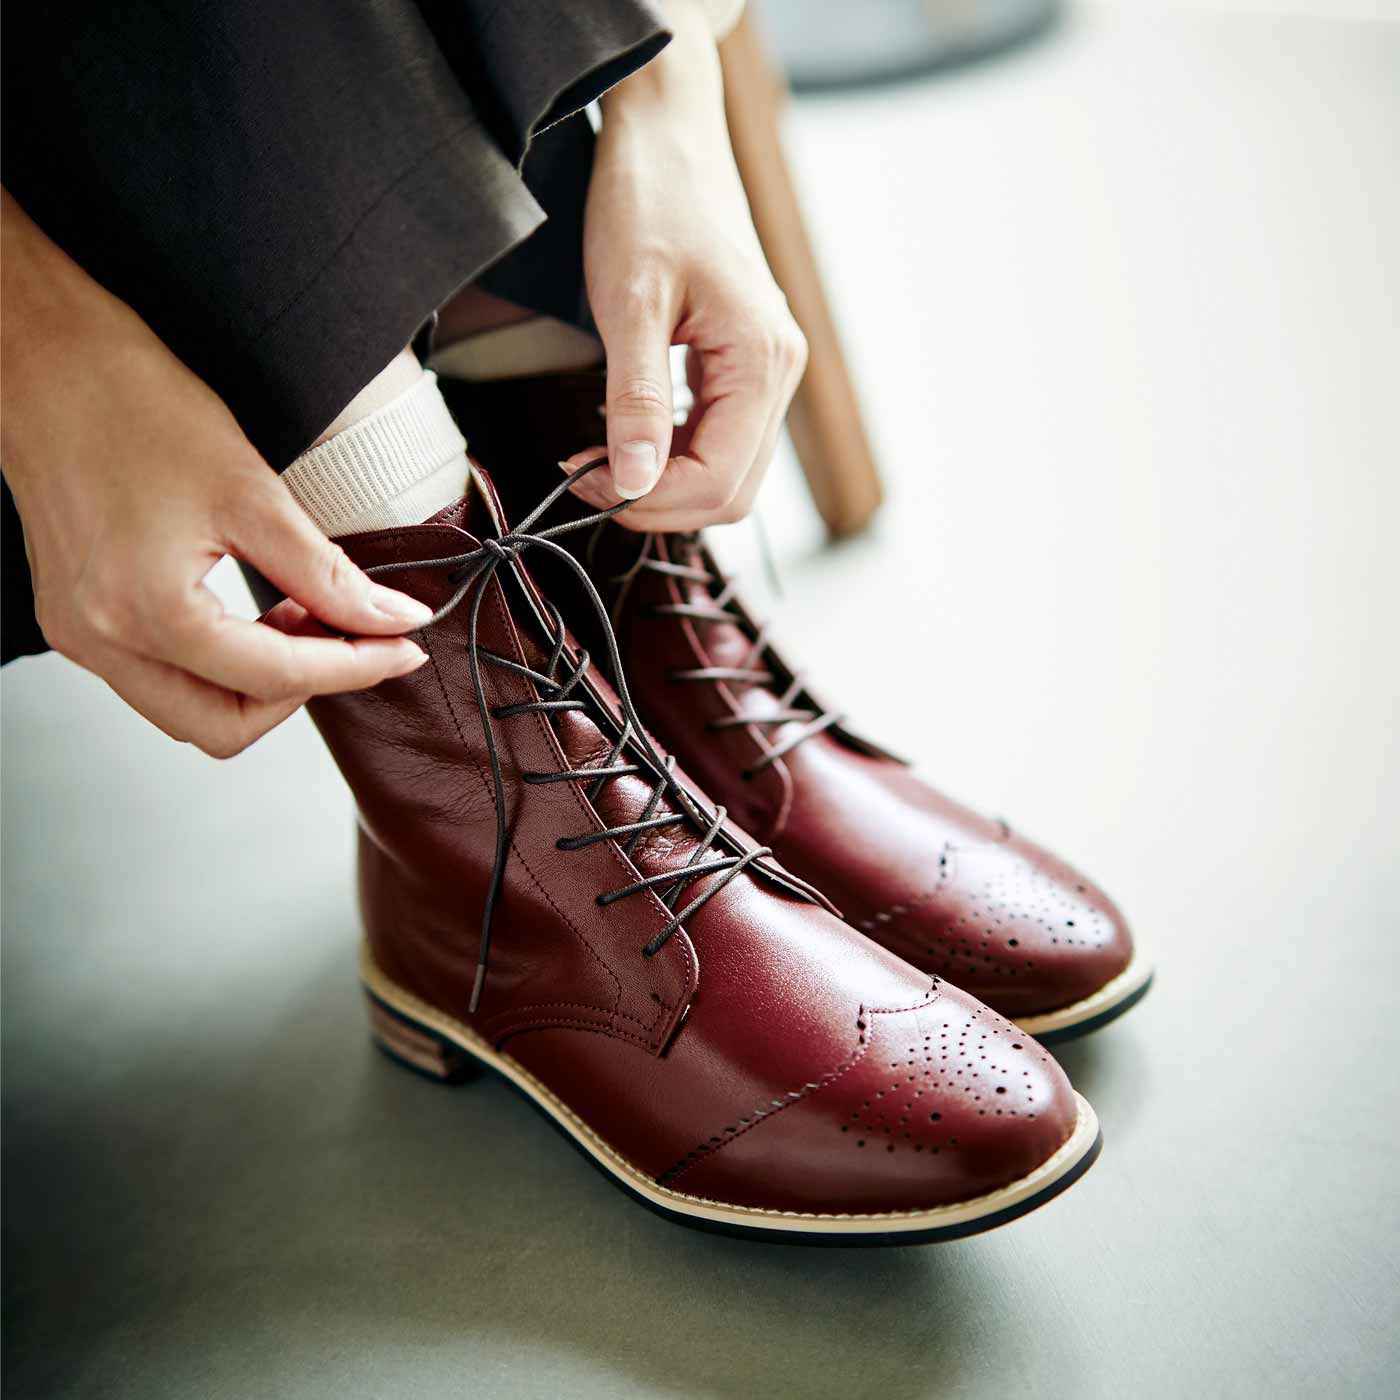 ＆Stories|長田靴職人が叶えた 理想の本革ウィングチップブーツ〈レッドブラウン〉[本革 ブーツ：日本製]|パンツもスカートもバランスよく決まる丈。レッドブラウンはノスタルジックでやさしい雰囲気。